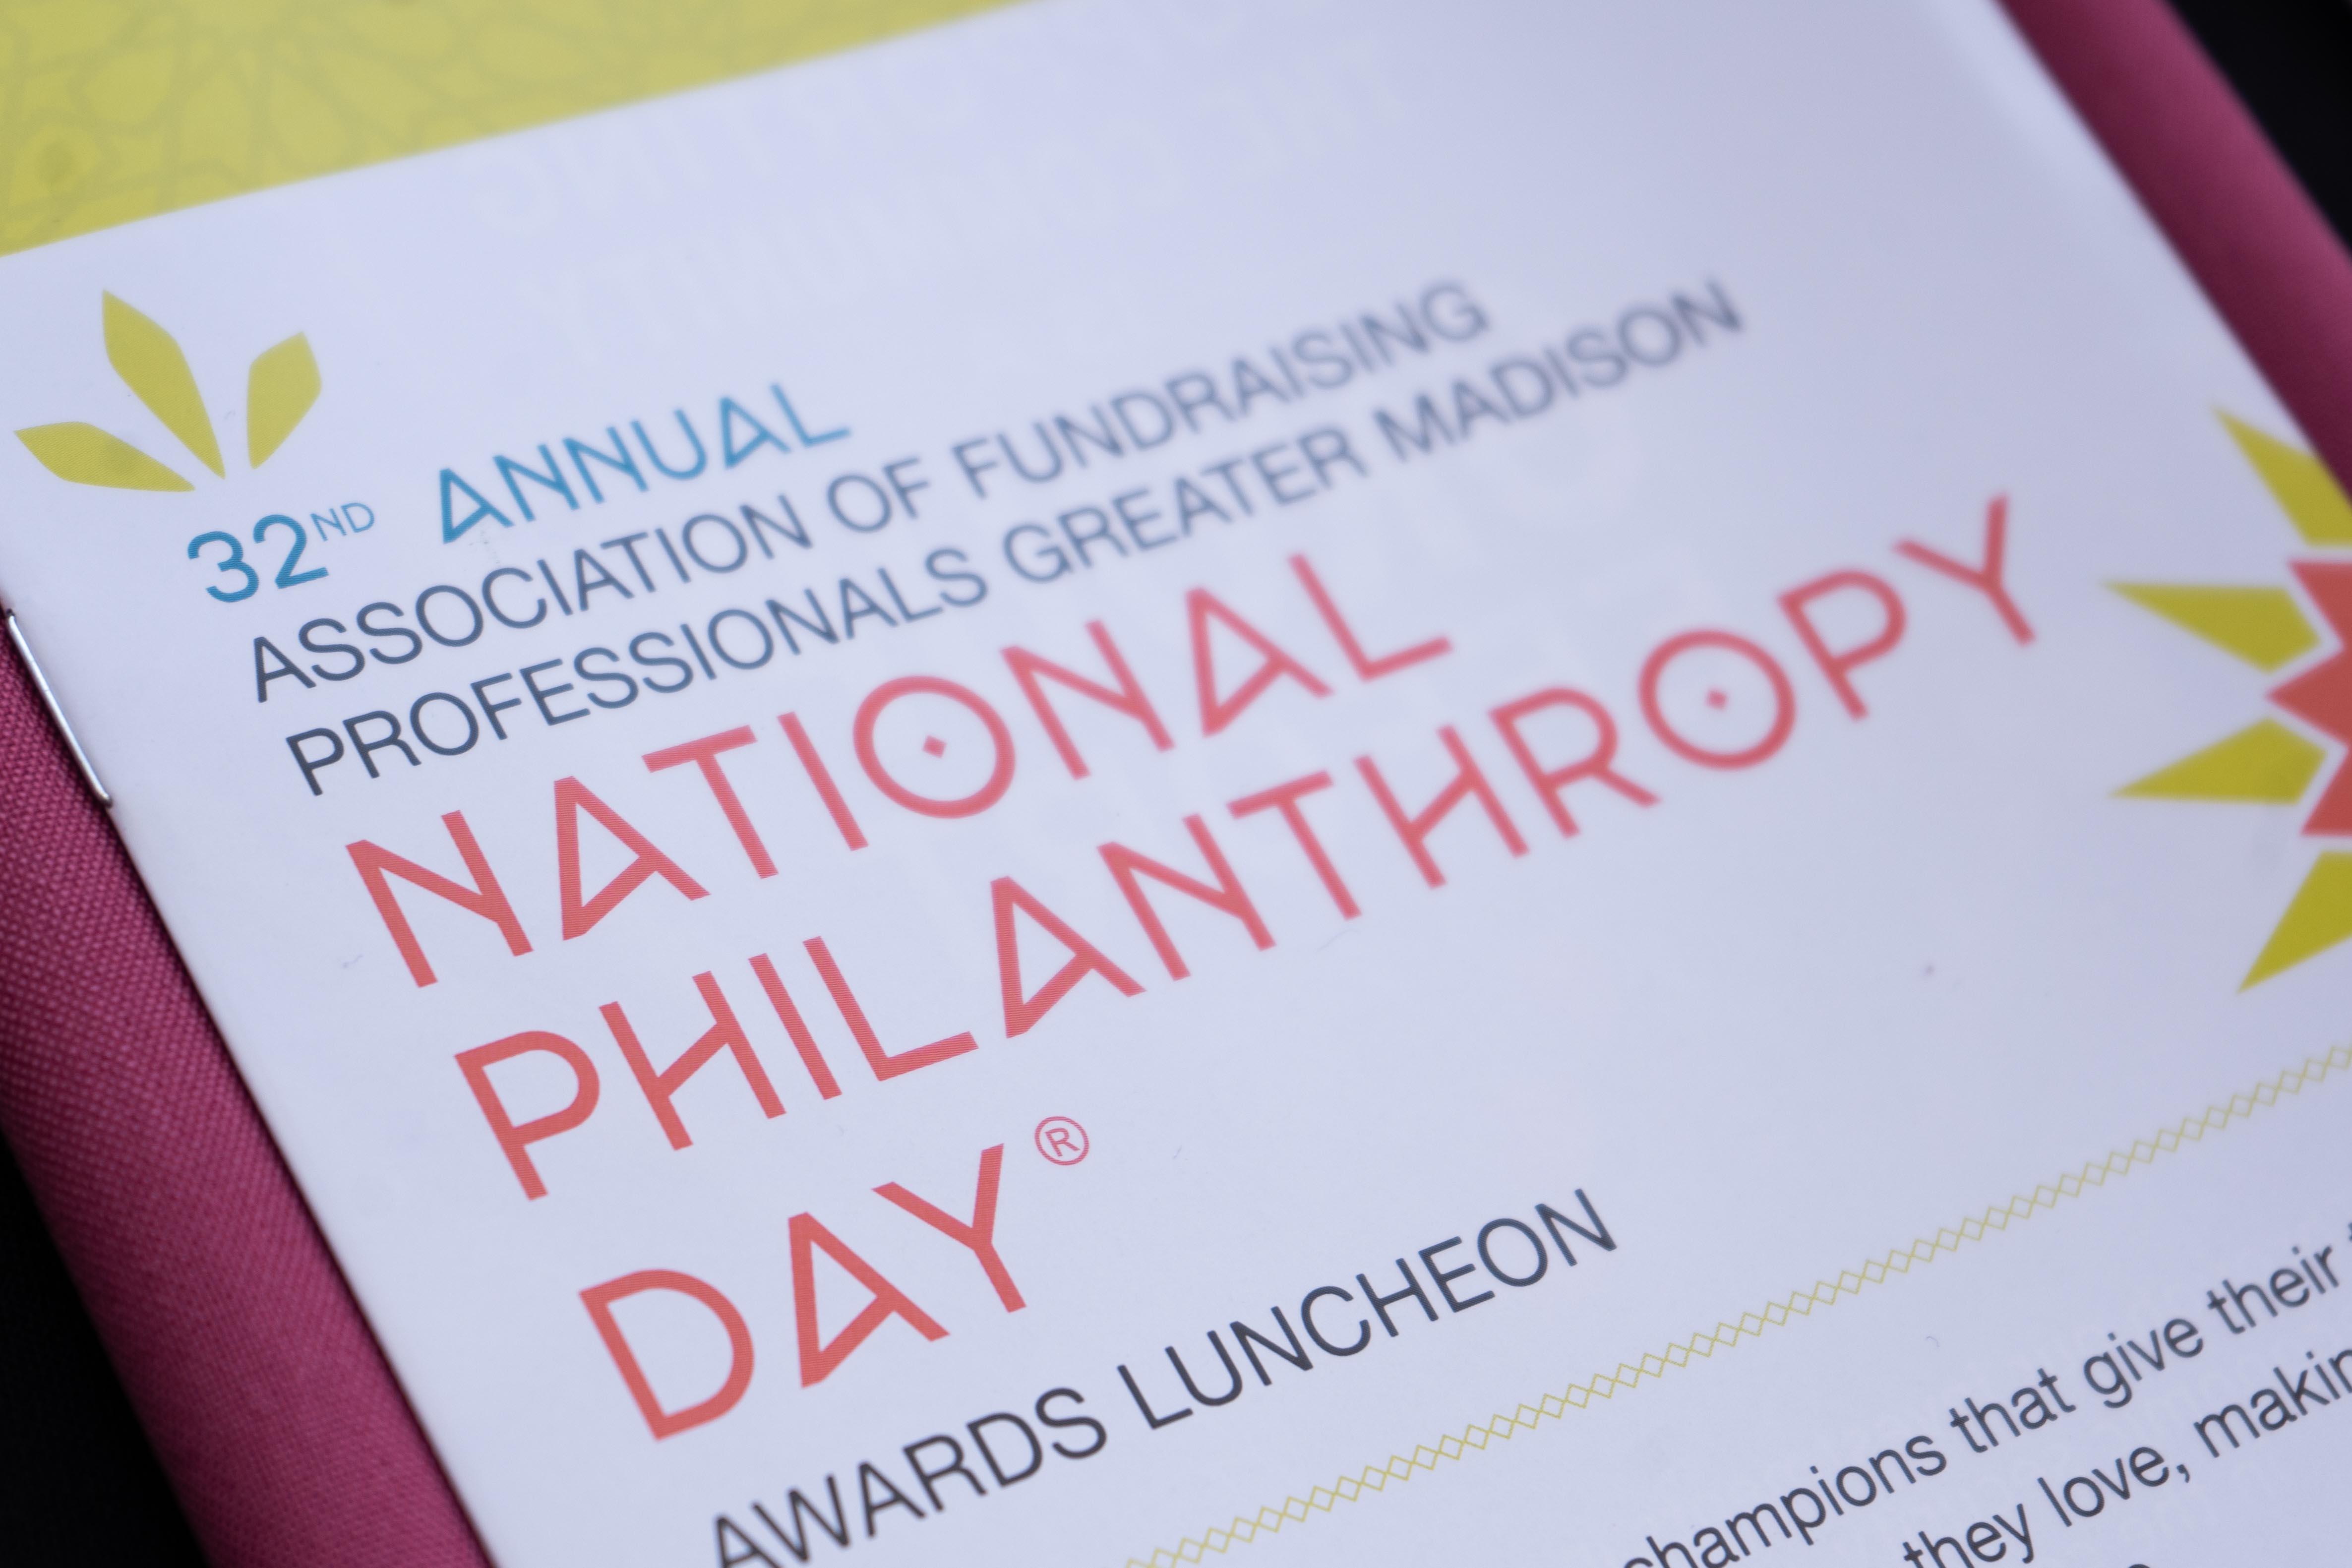 National Philanthropy Day Program